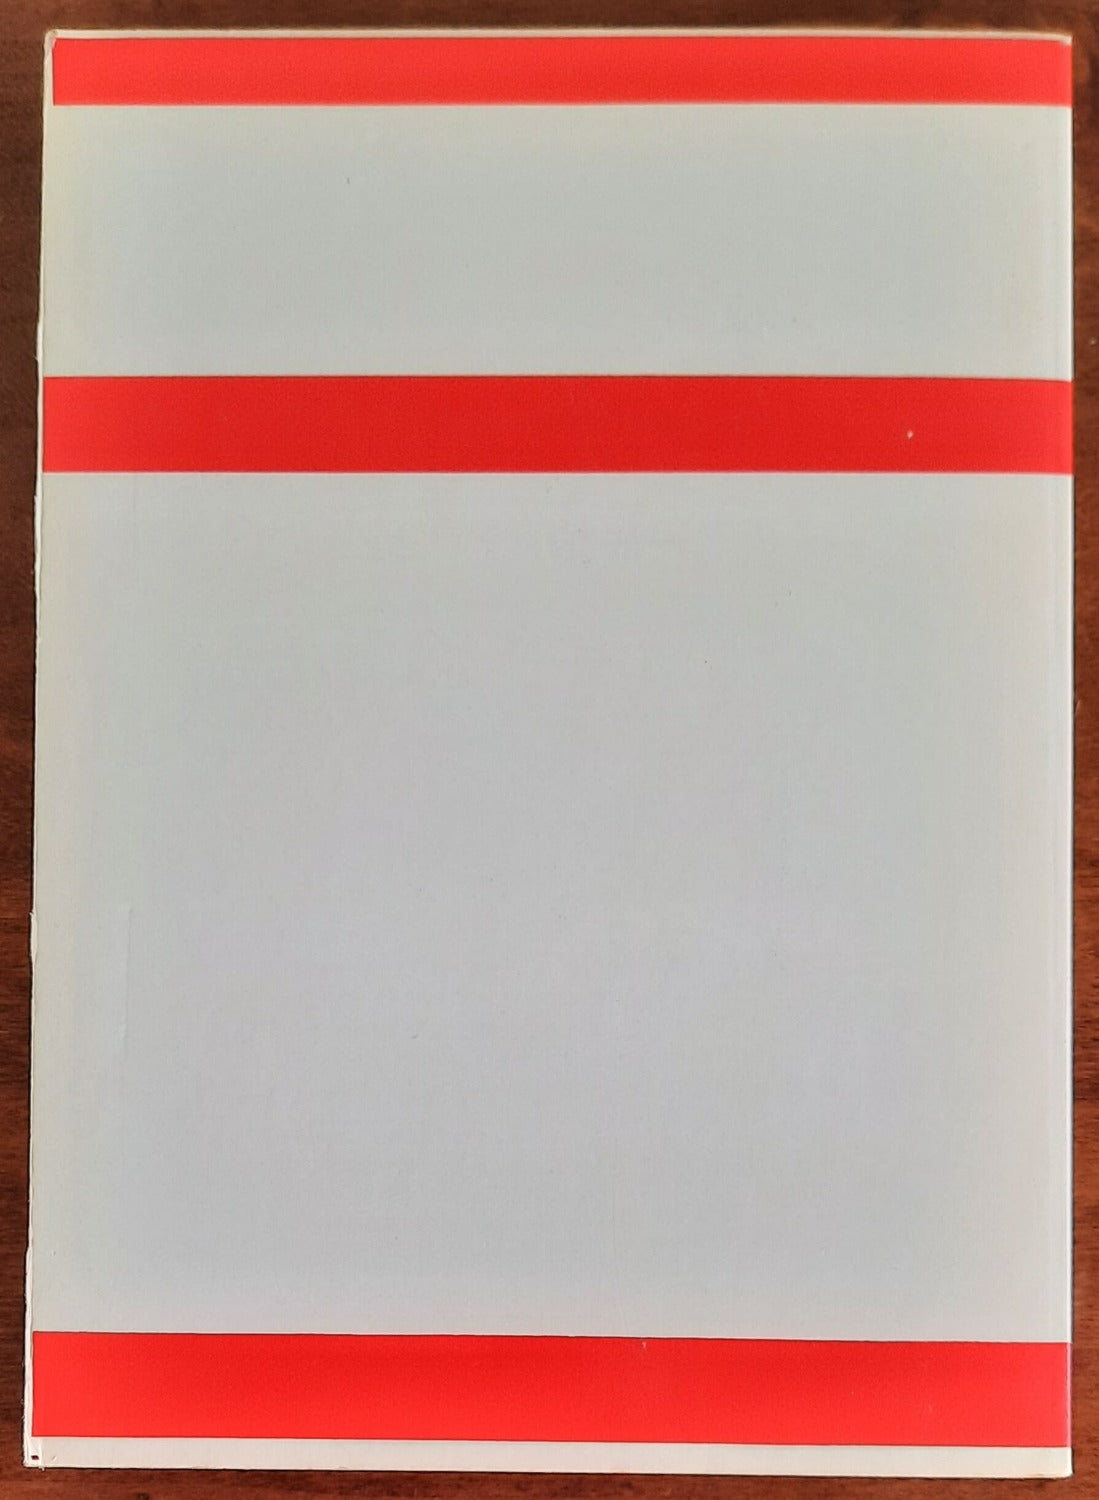 Il socialismo e la pace - Teti Editore - 1983